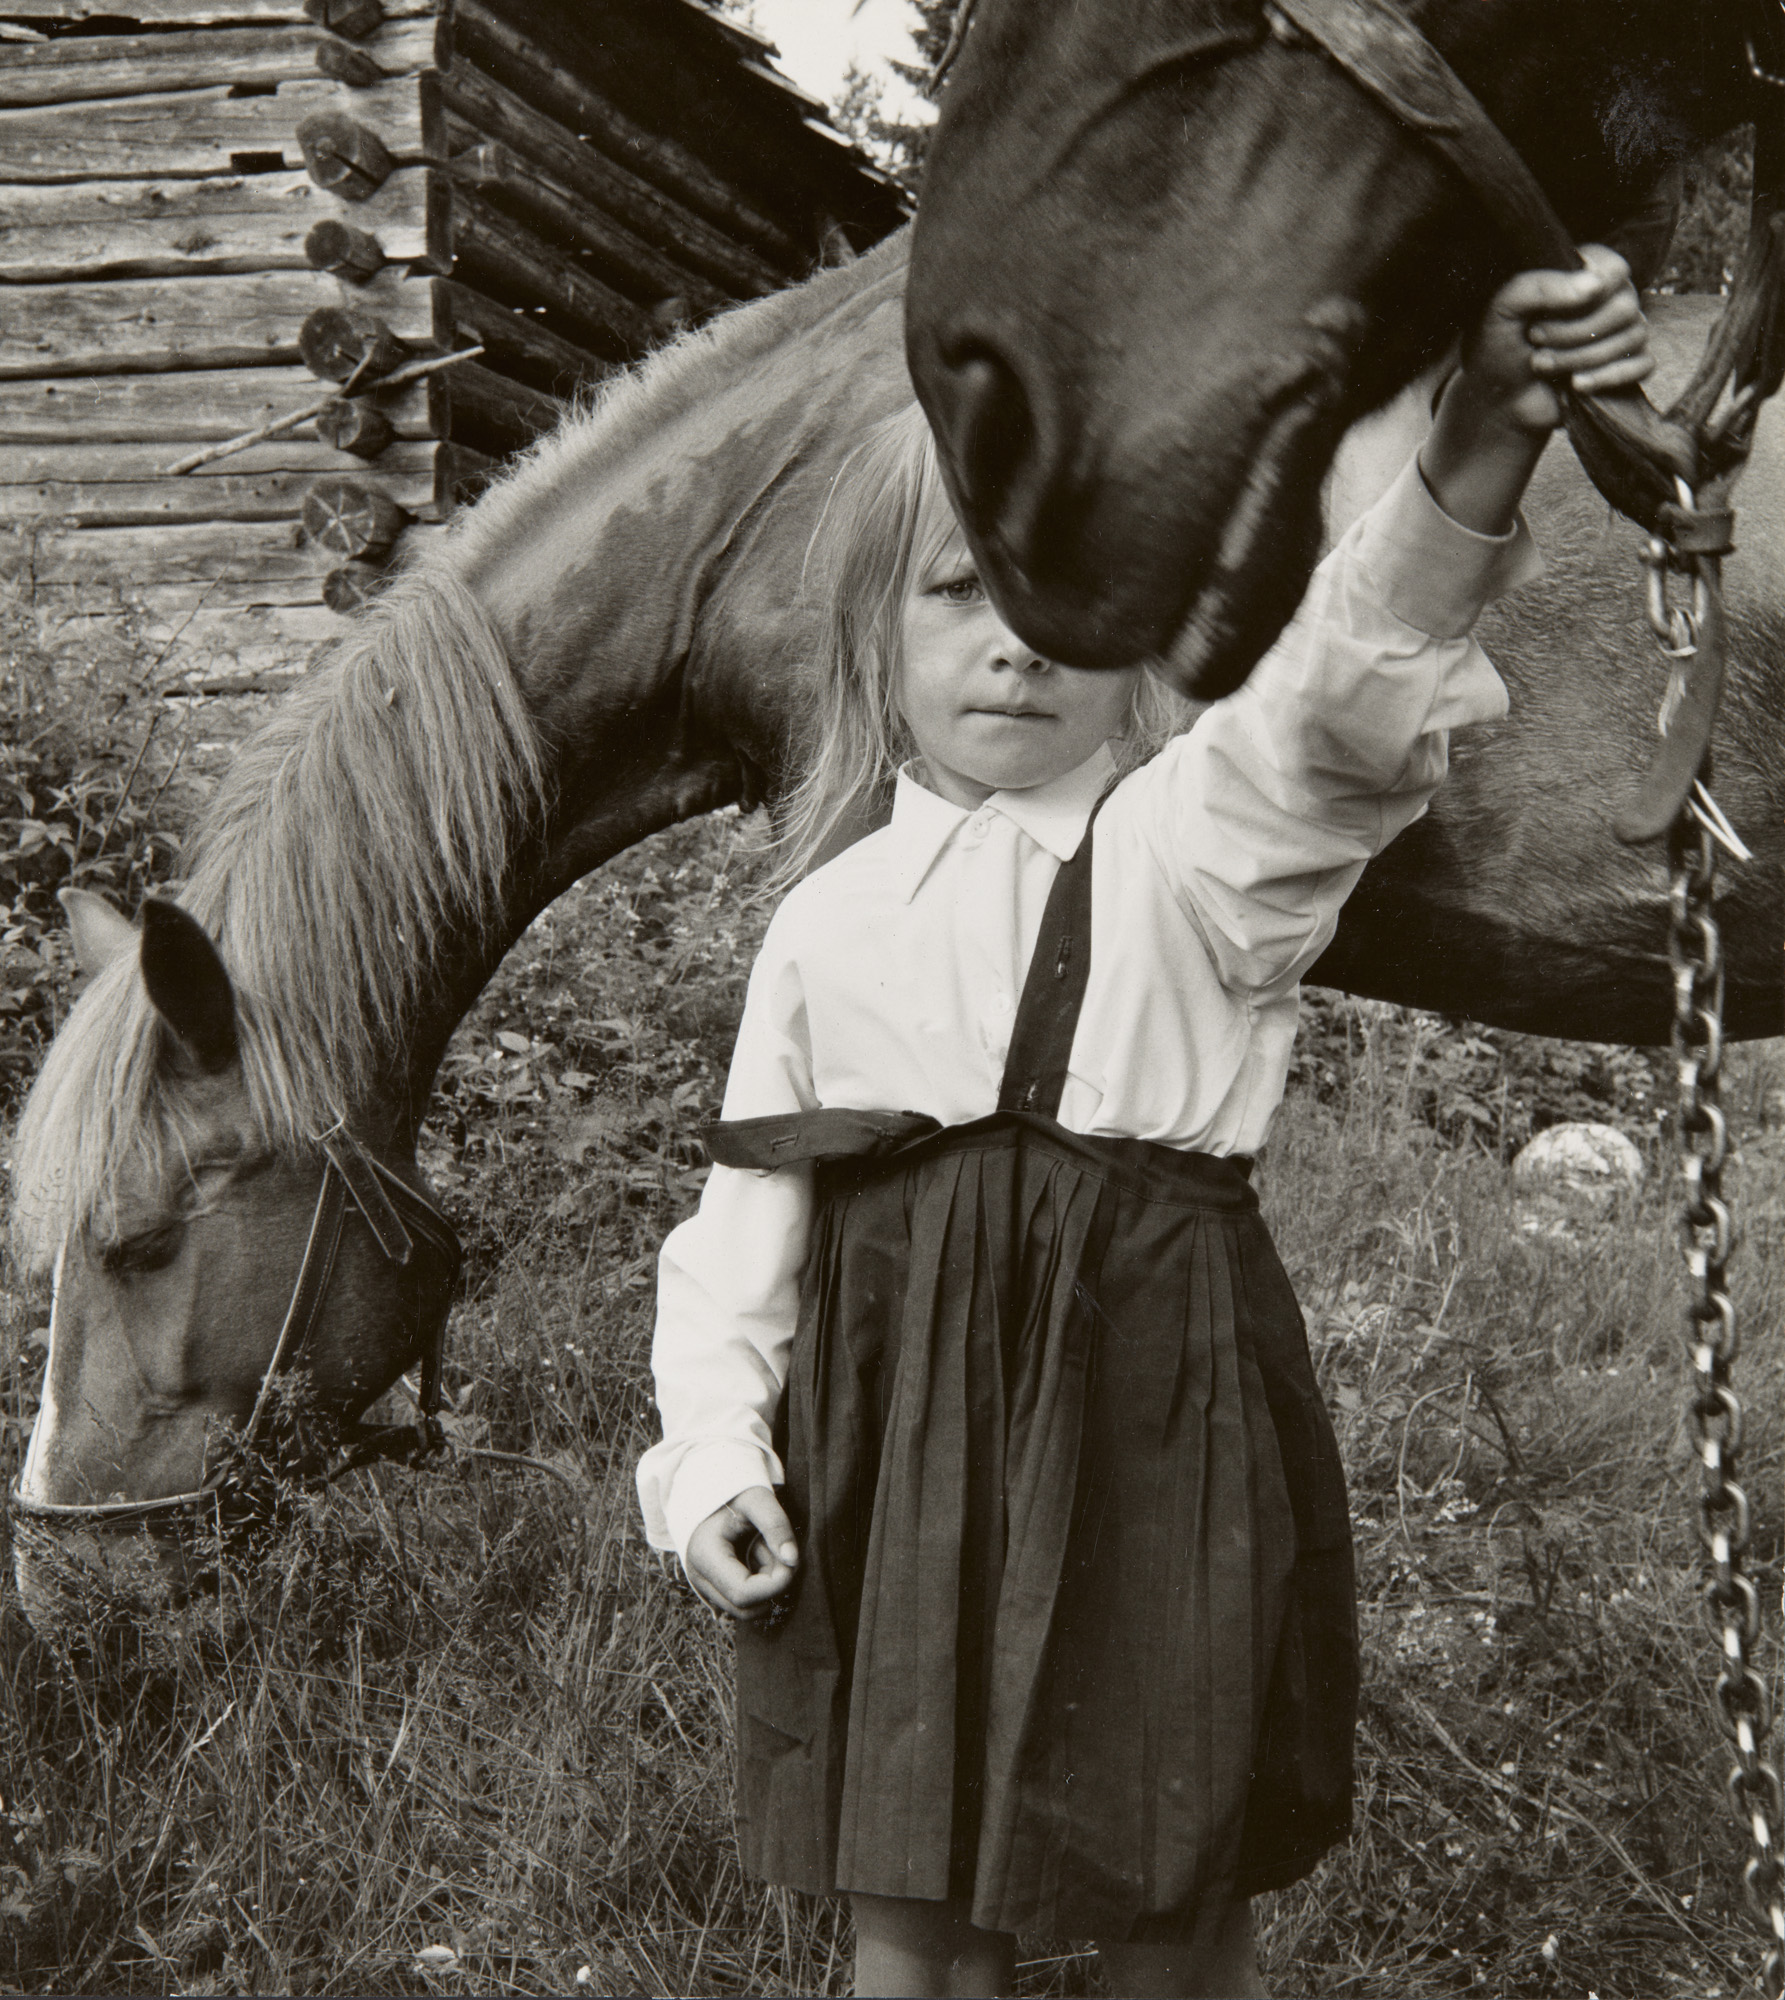 Pieni tyttö puolikuvassa kahden hevosen välissä niityllä. Toisesta hevosesta näkyy kuvassa vain turpa, ja tyttö pitää kiinni hevosen suitsista. Toinen hevonen syö heinää maasta tytön takana. Tytöllä on yllään valkoinen kauluspaita ja musta liivihame. Taustalla näkyy hirsirakennuksen nurkka.